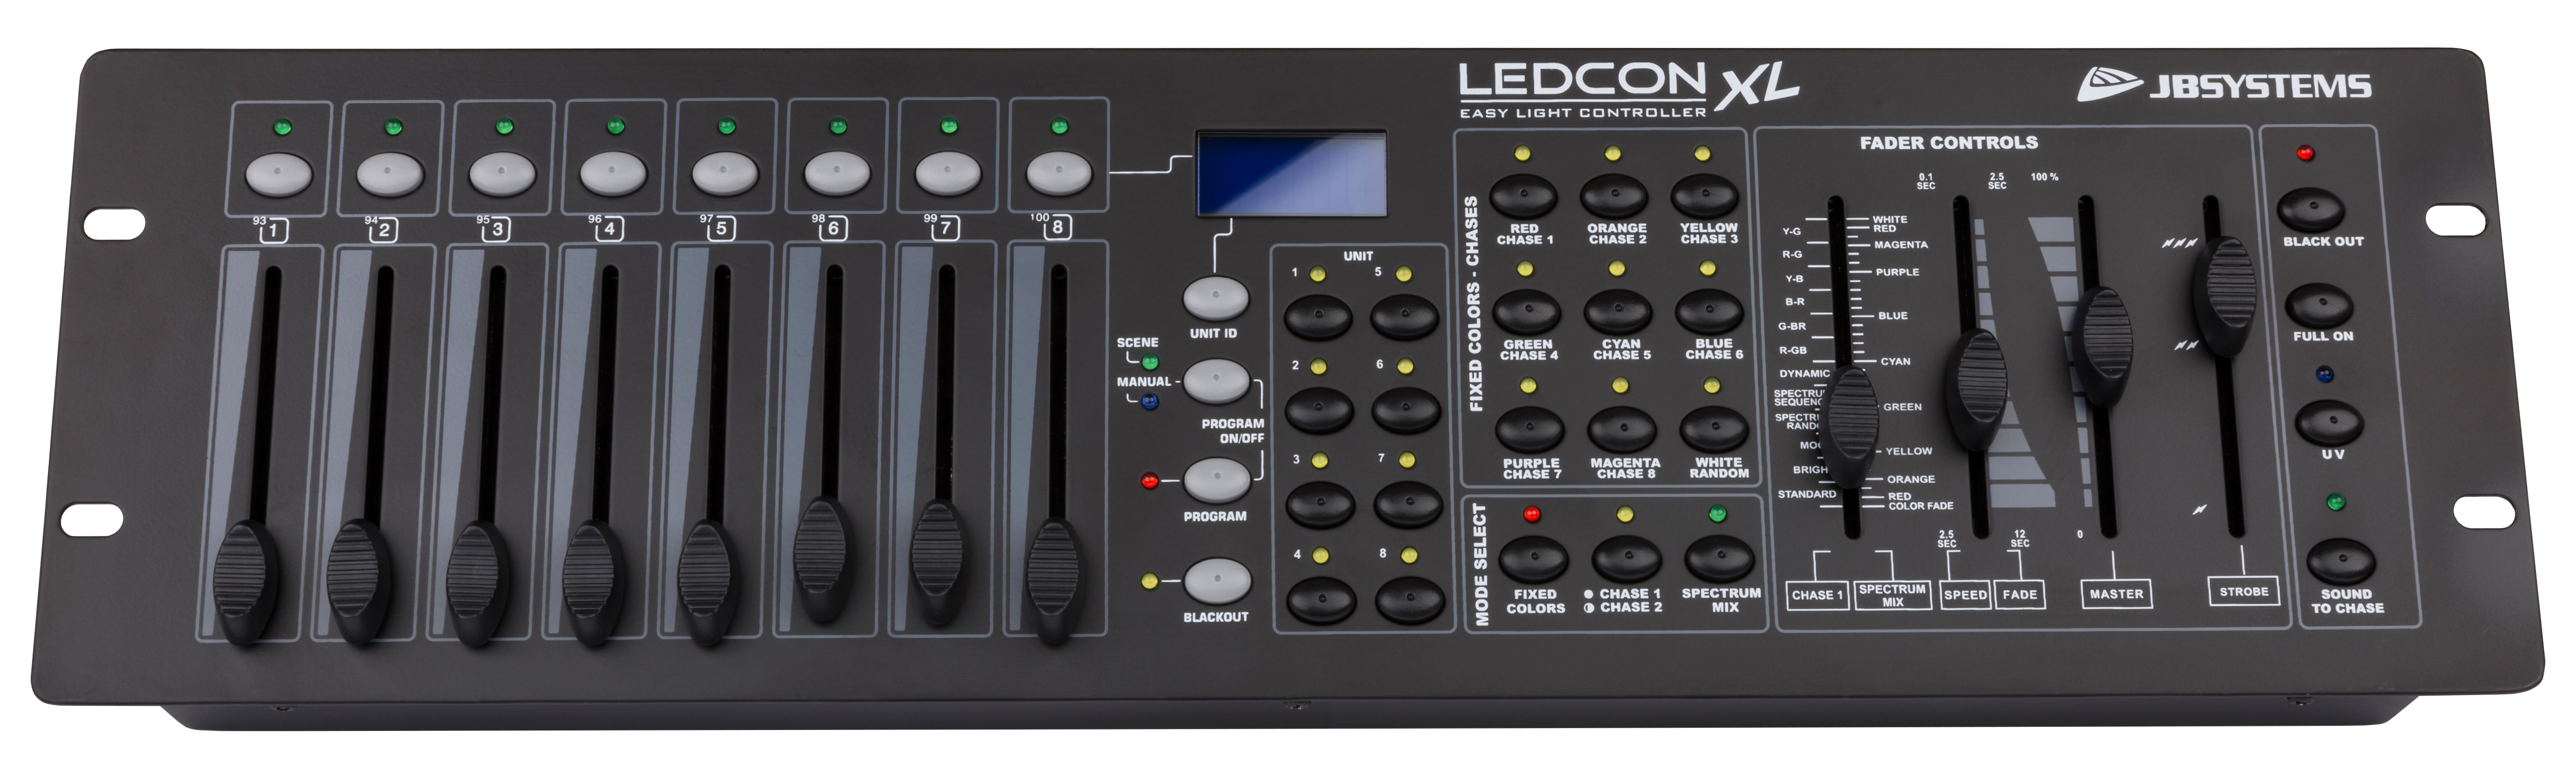 LEDCON-XL controller